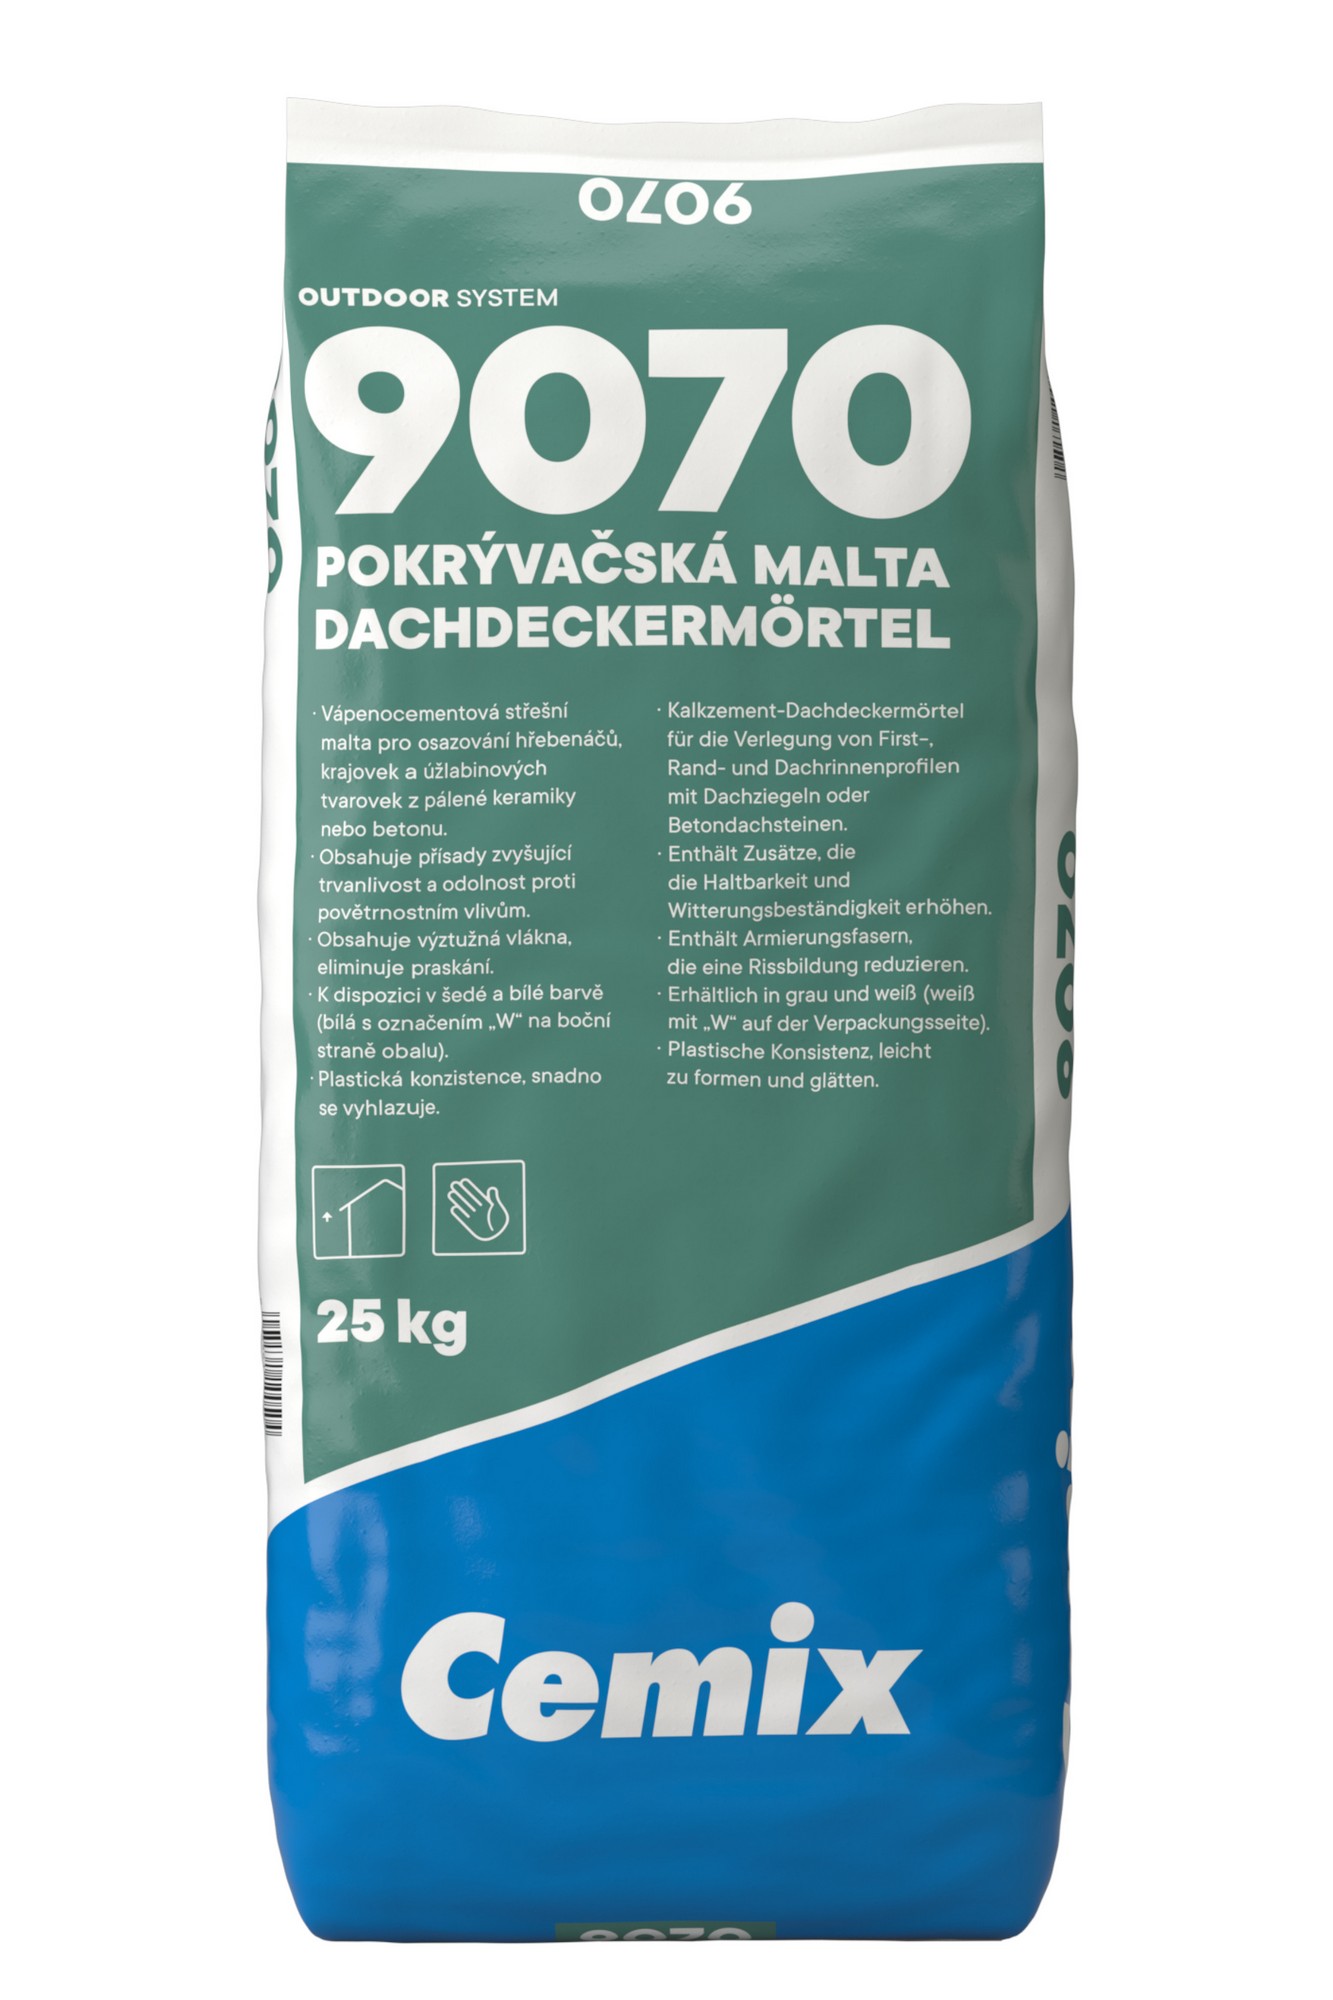 Malta pokrývačská Cemix 9070 bílá 25 kg